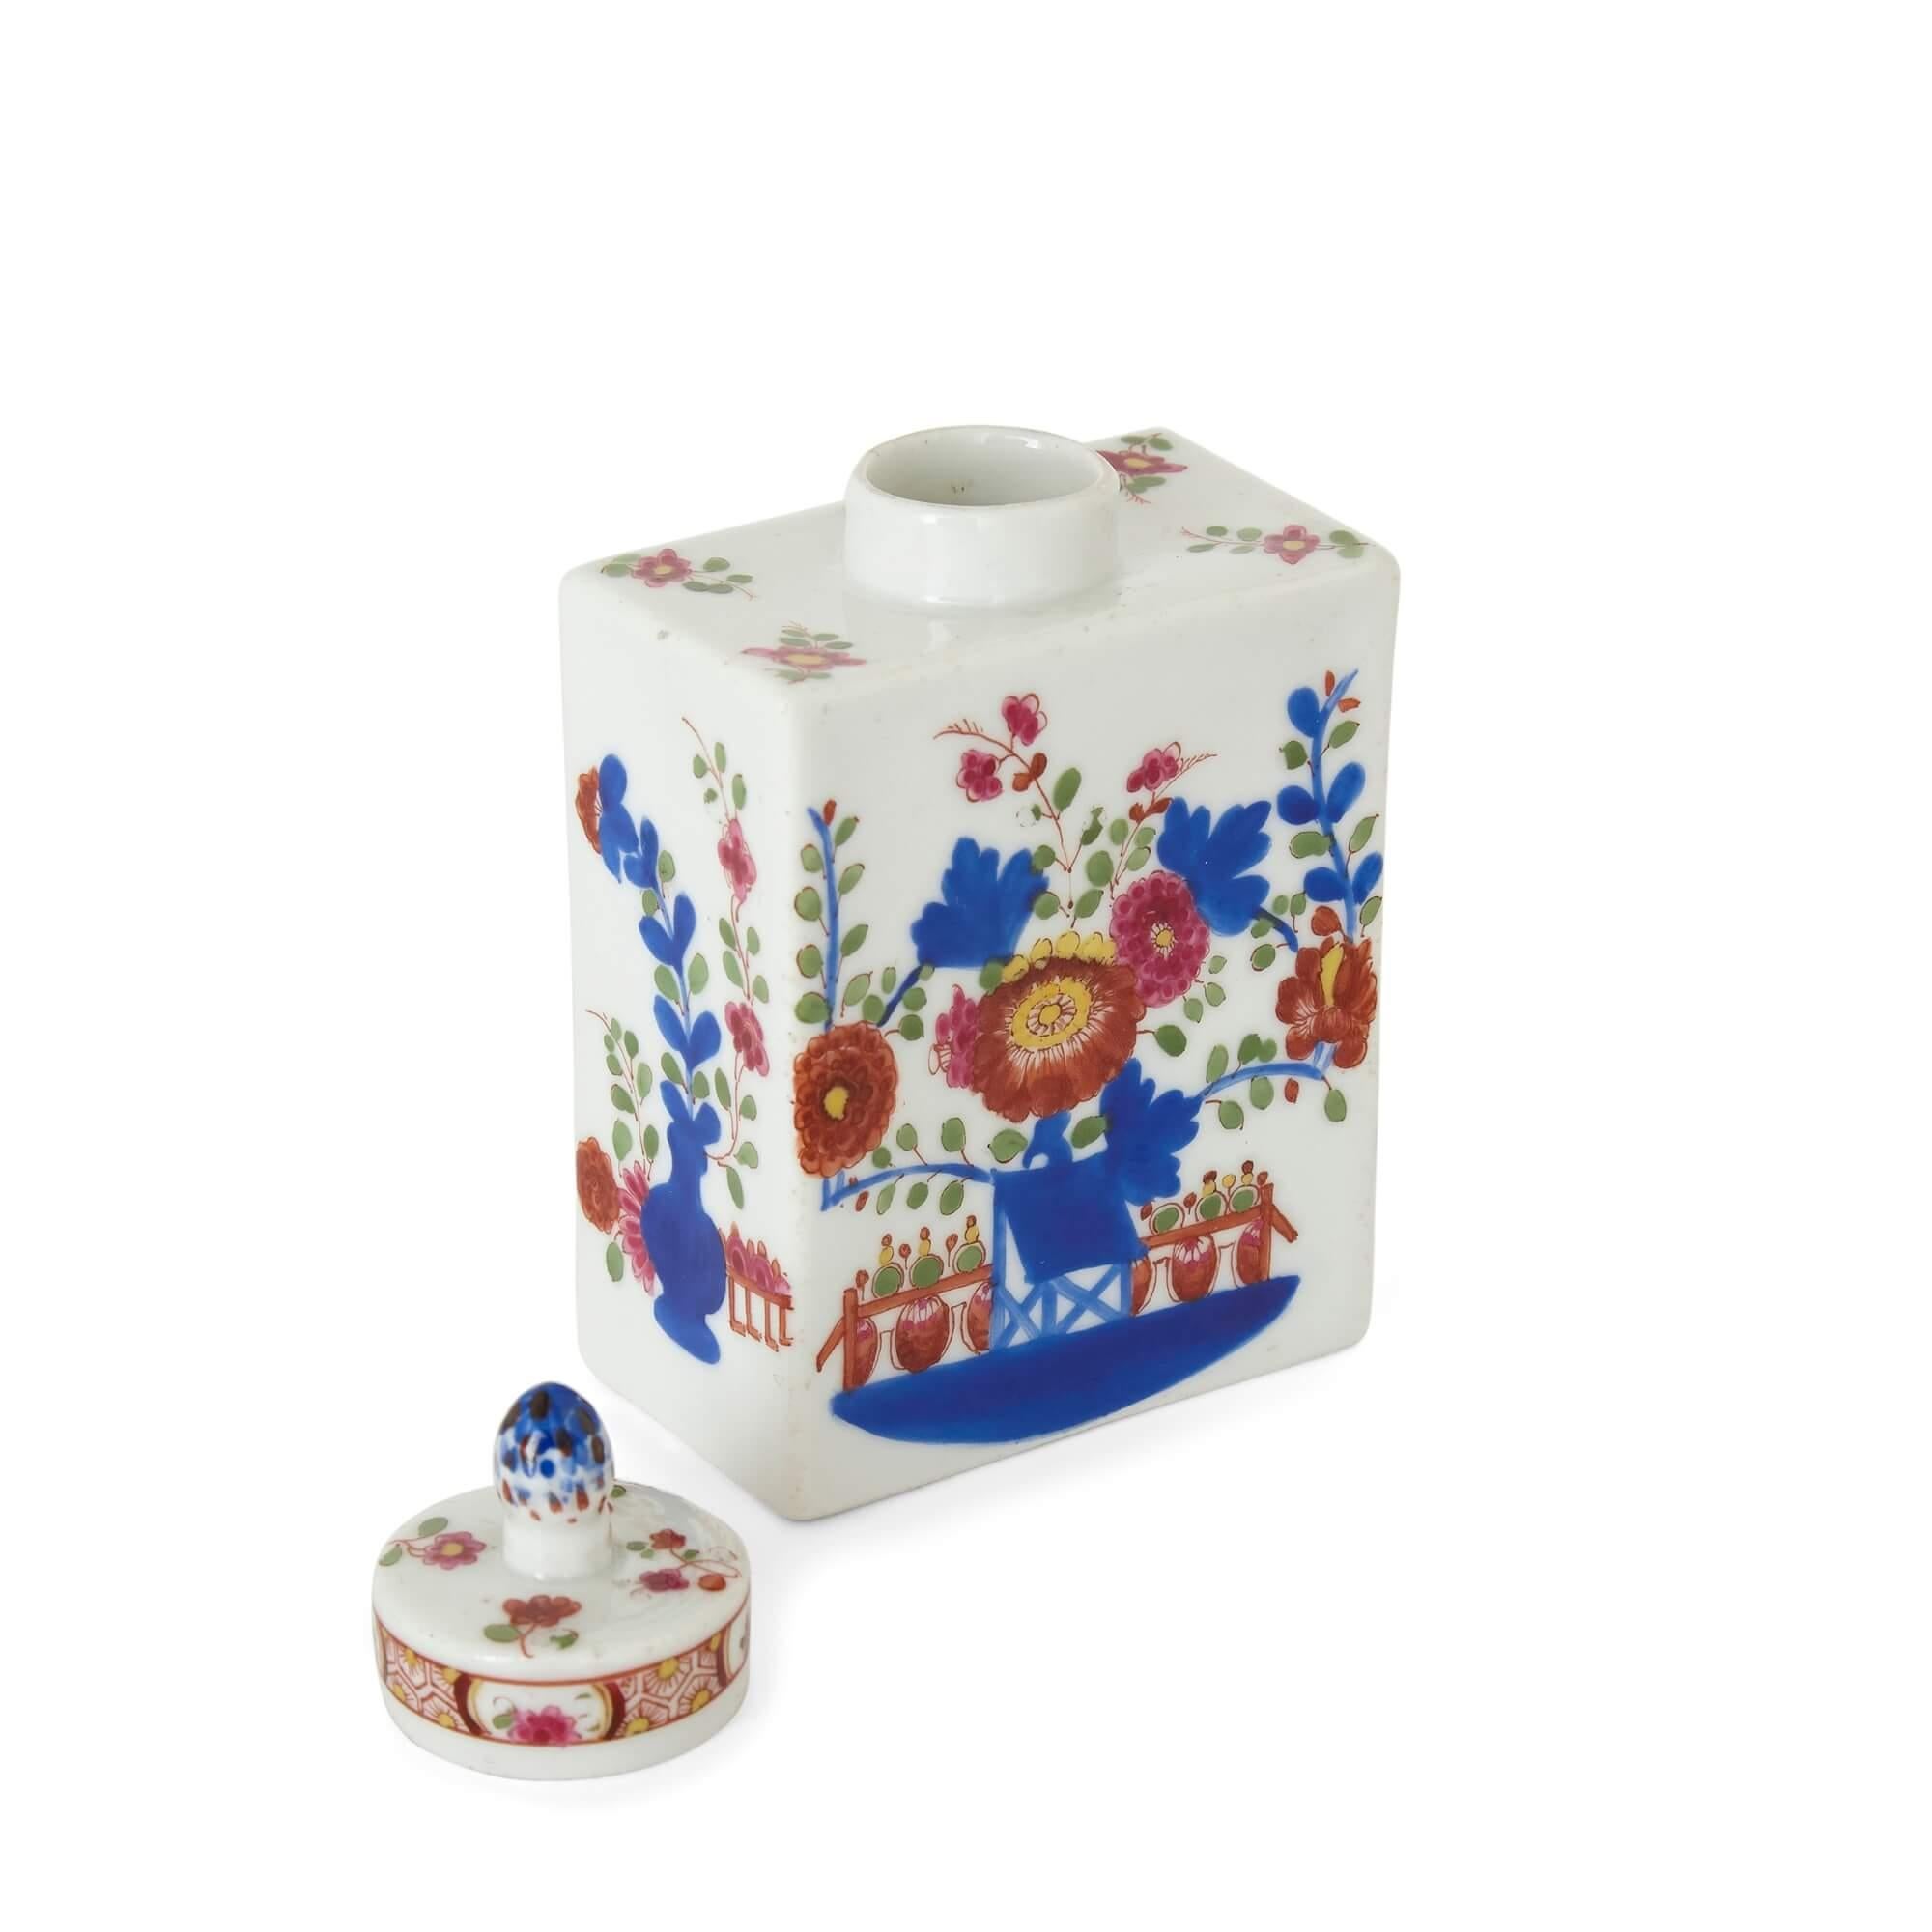 Painted Antique porcelain miniature floral tea caddy For Sale